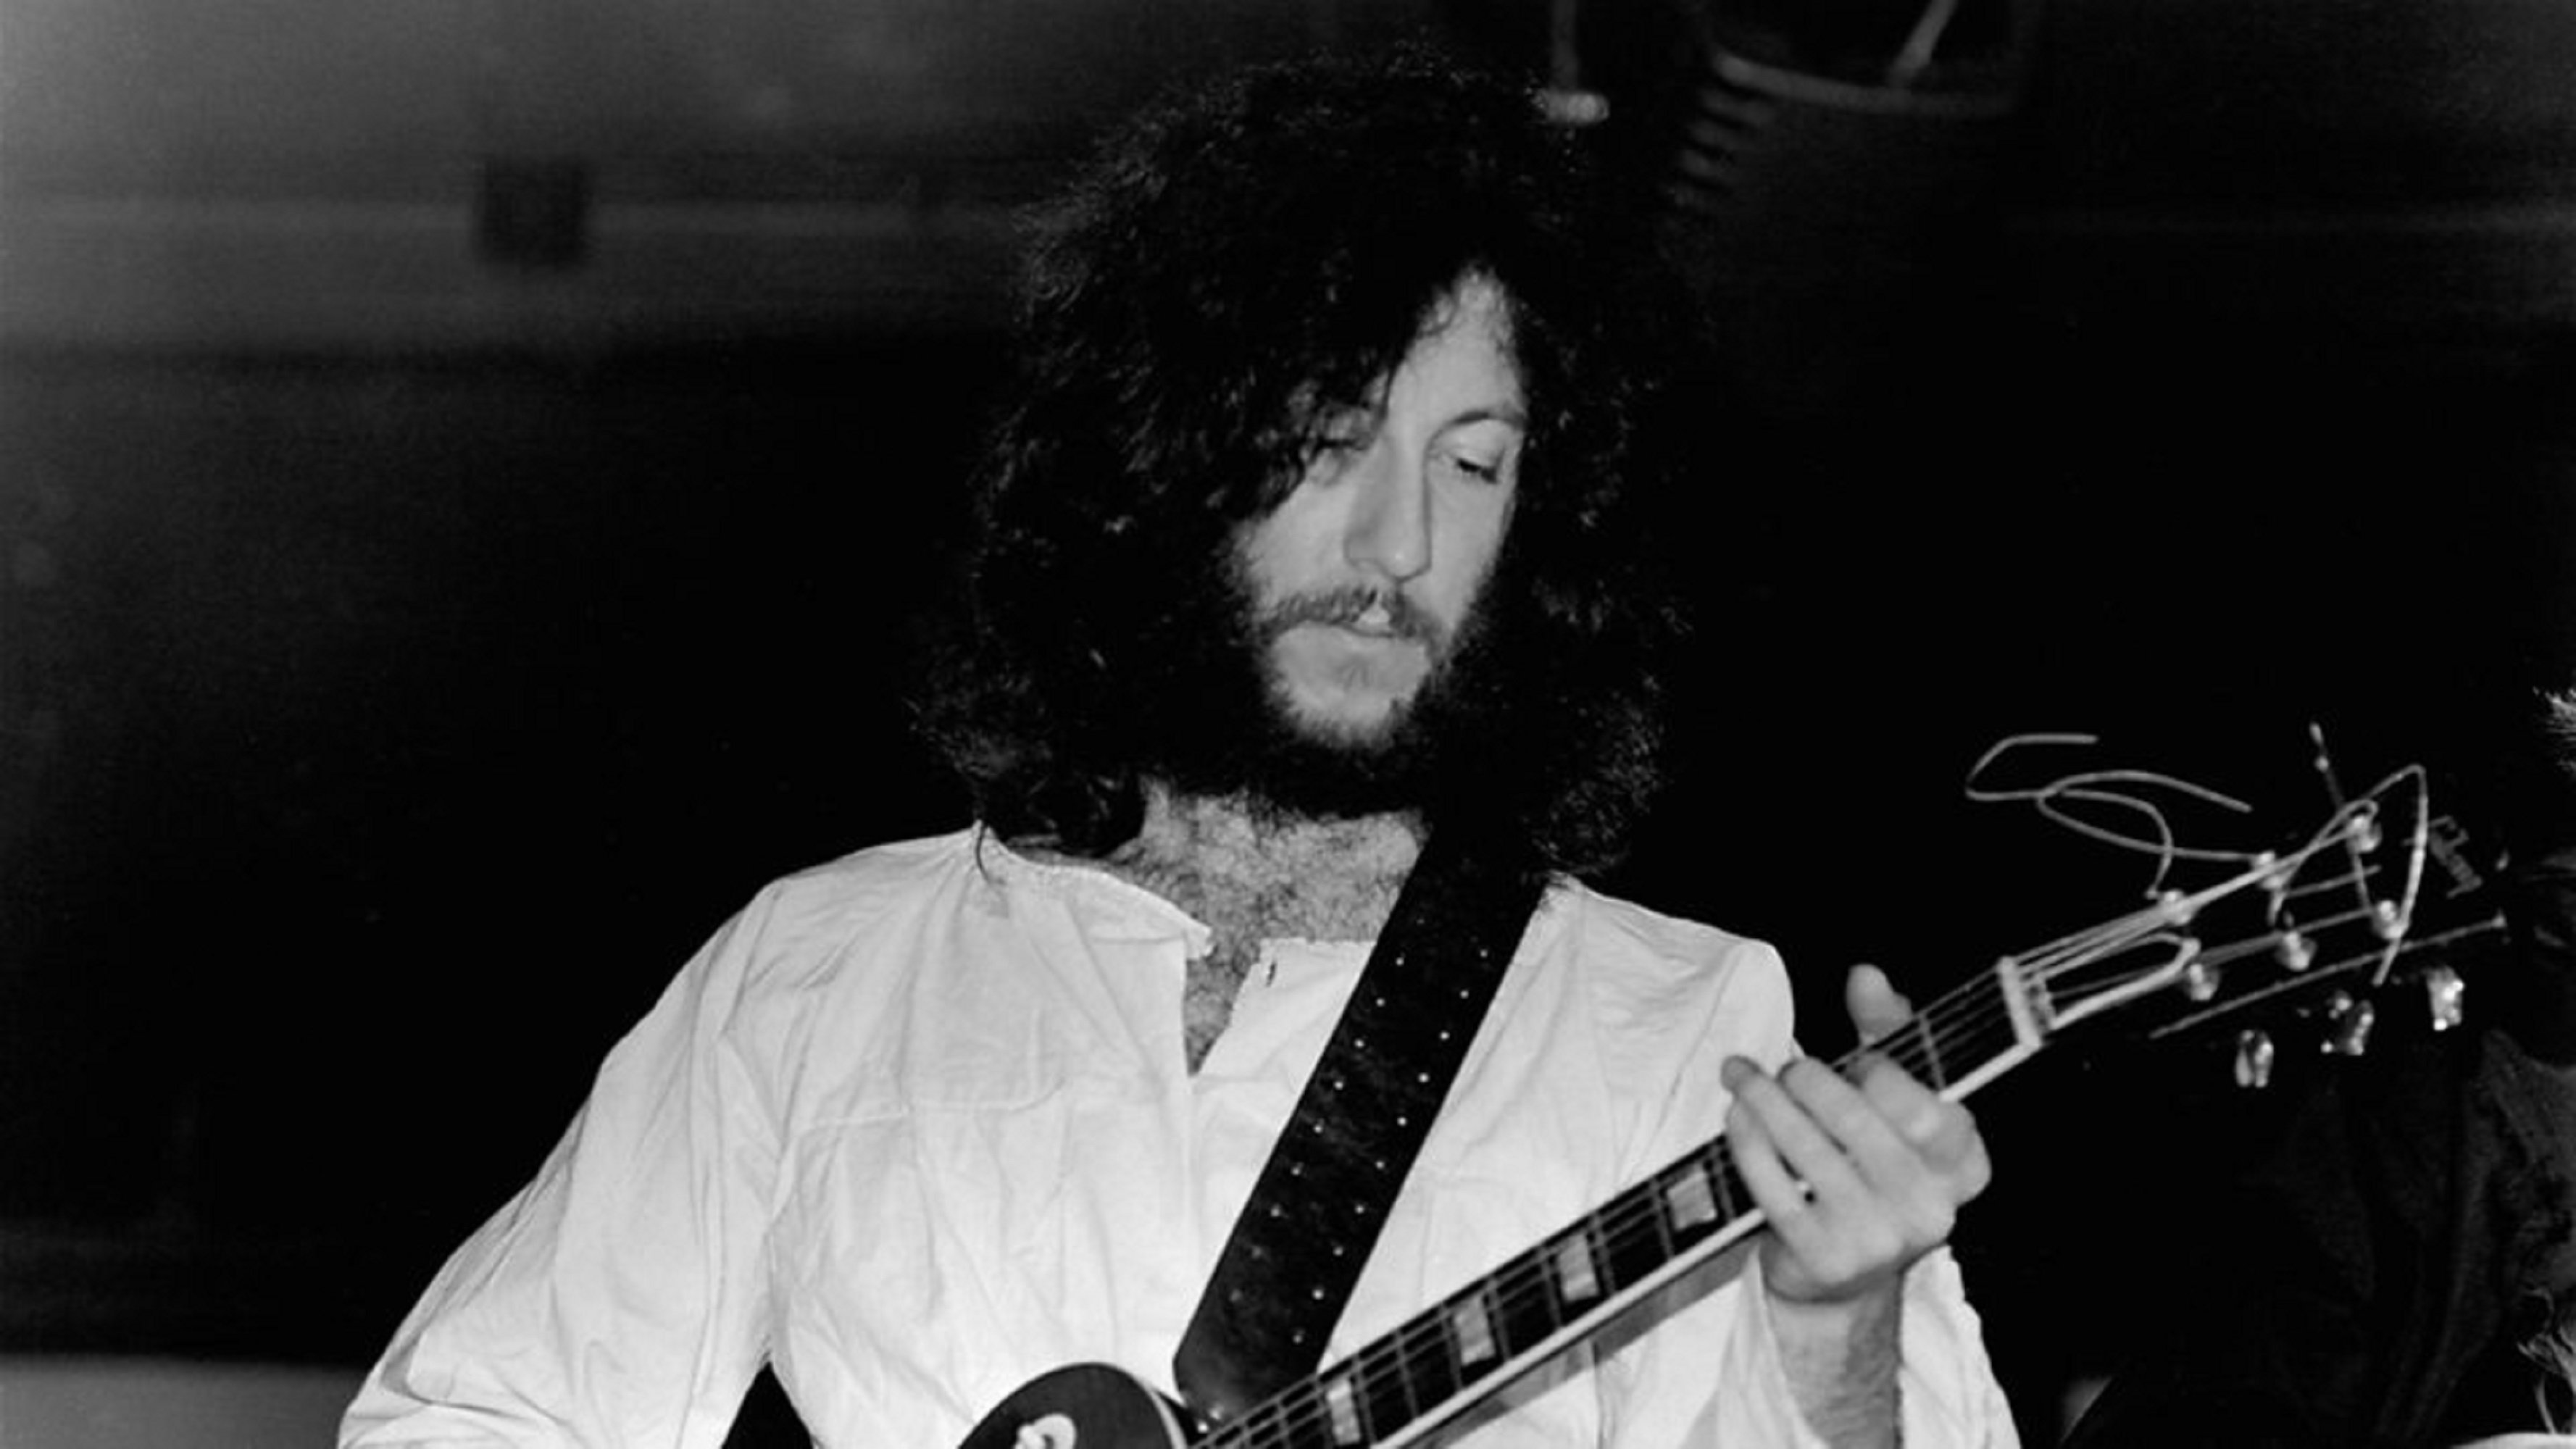 Mor als 73 anys el guitarrista Peter Green, cofundador de Fleetwood Mac